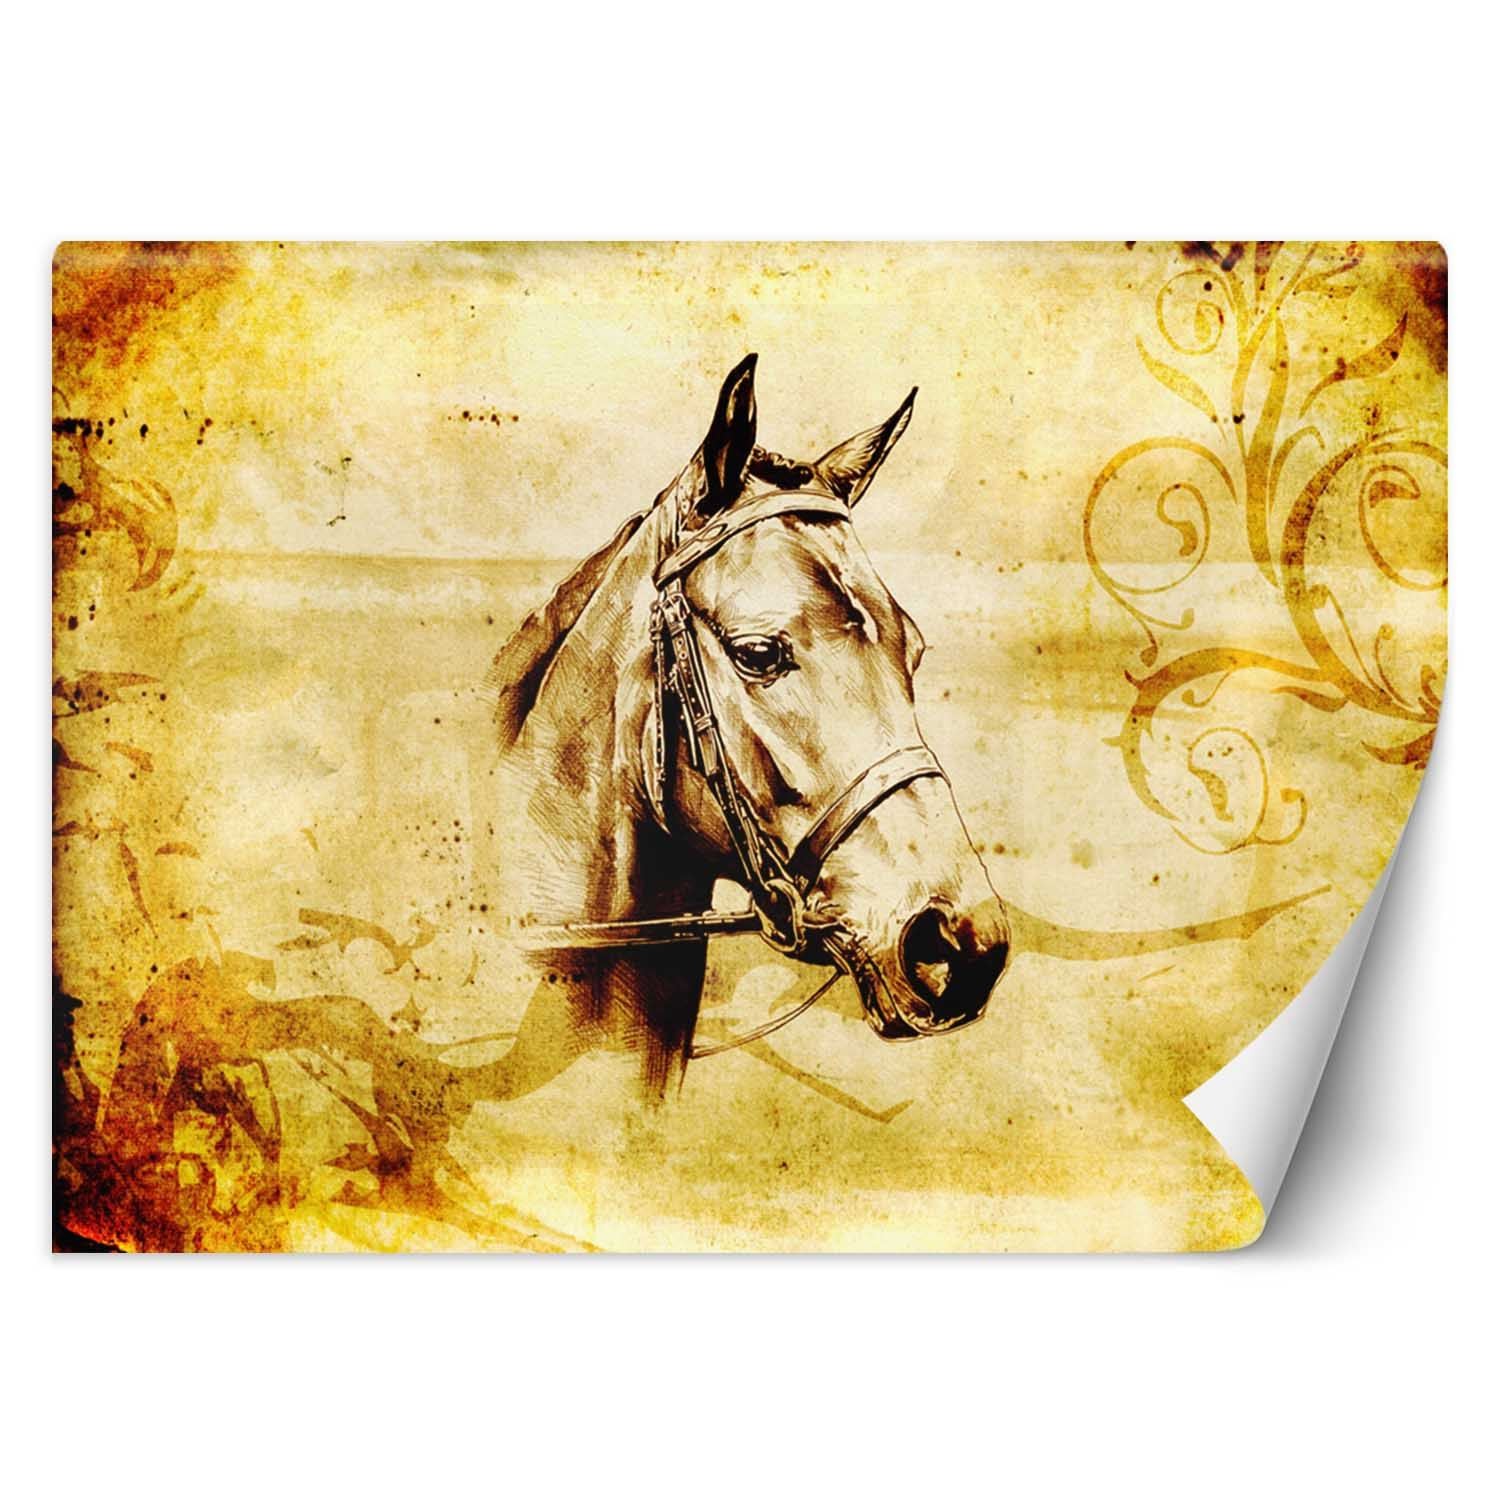 Trend24 – Behang – Schets Van Een Paard – Behangpapier – Fotobehang Dieren – Behang Woonkamer – 250x175x2 cm – Incl. behanglijm